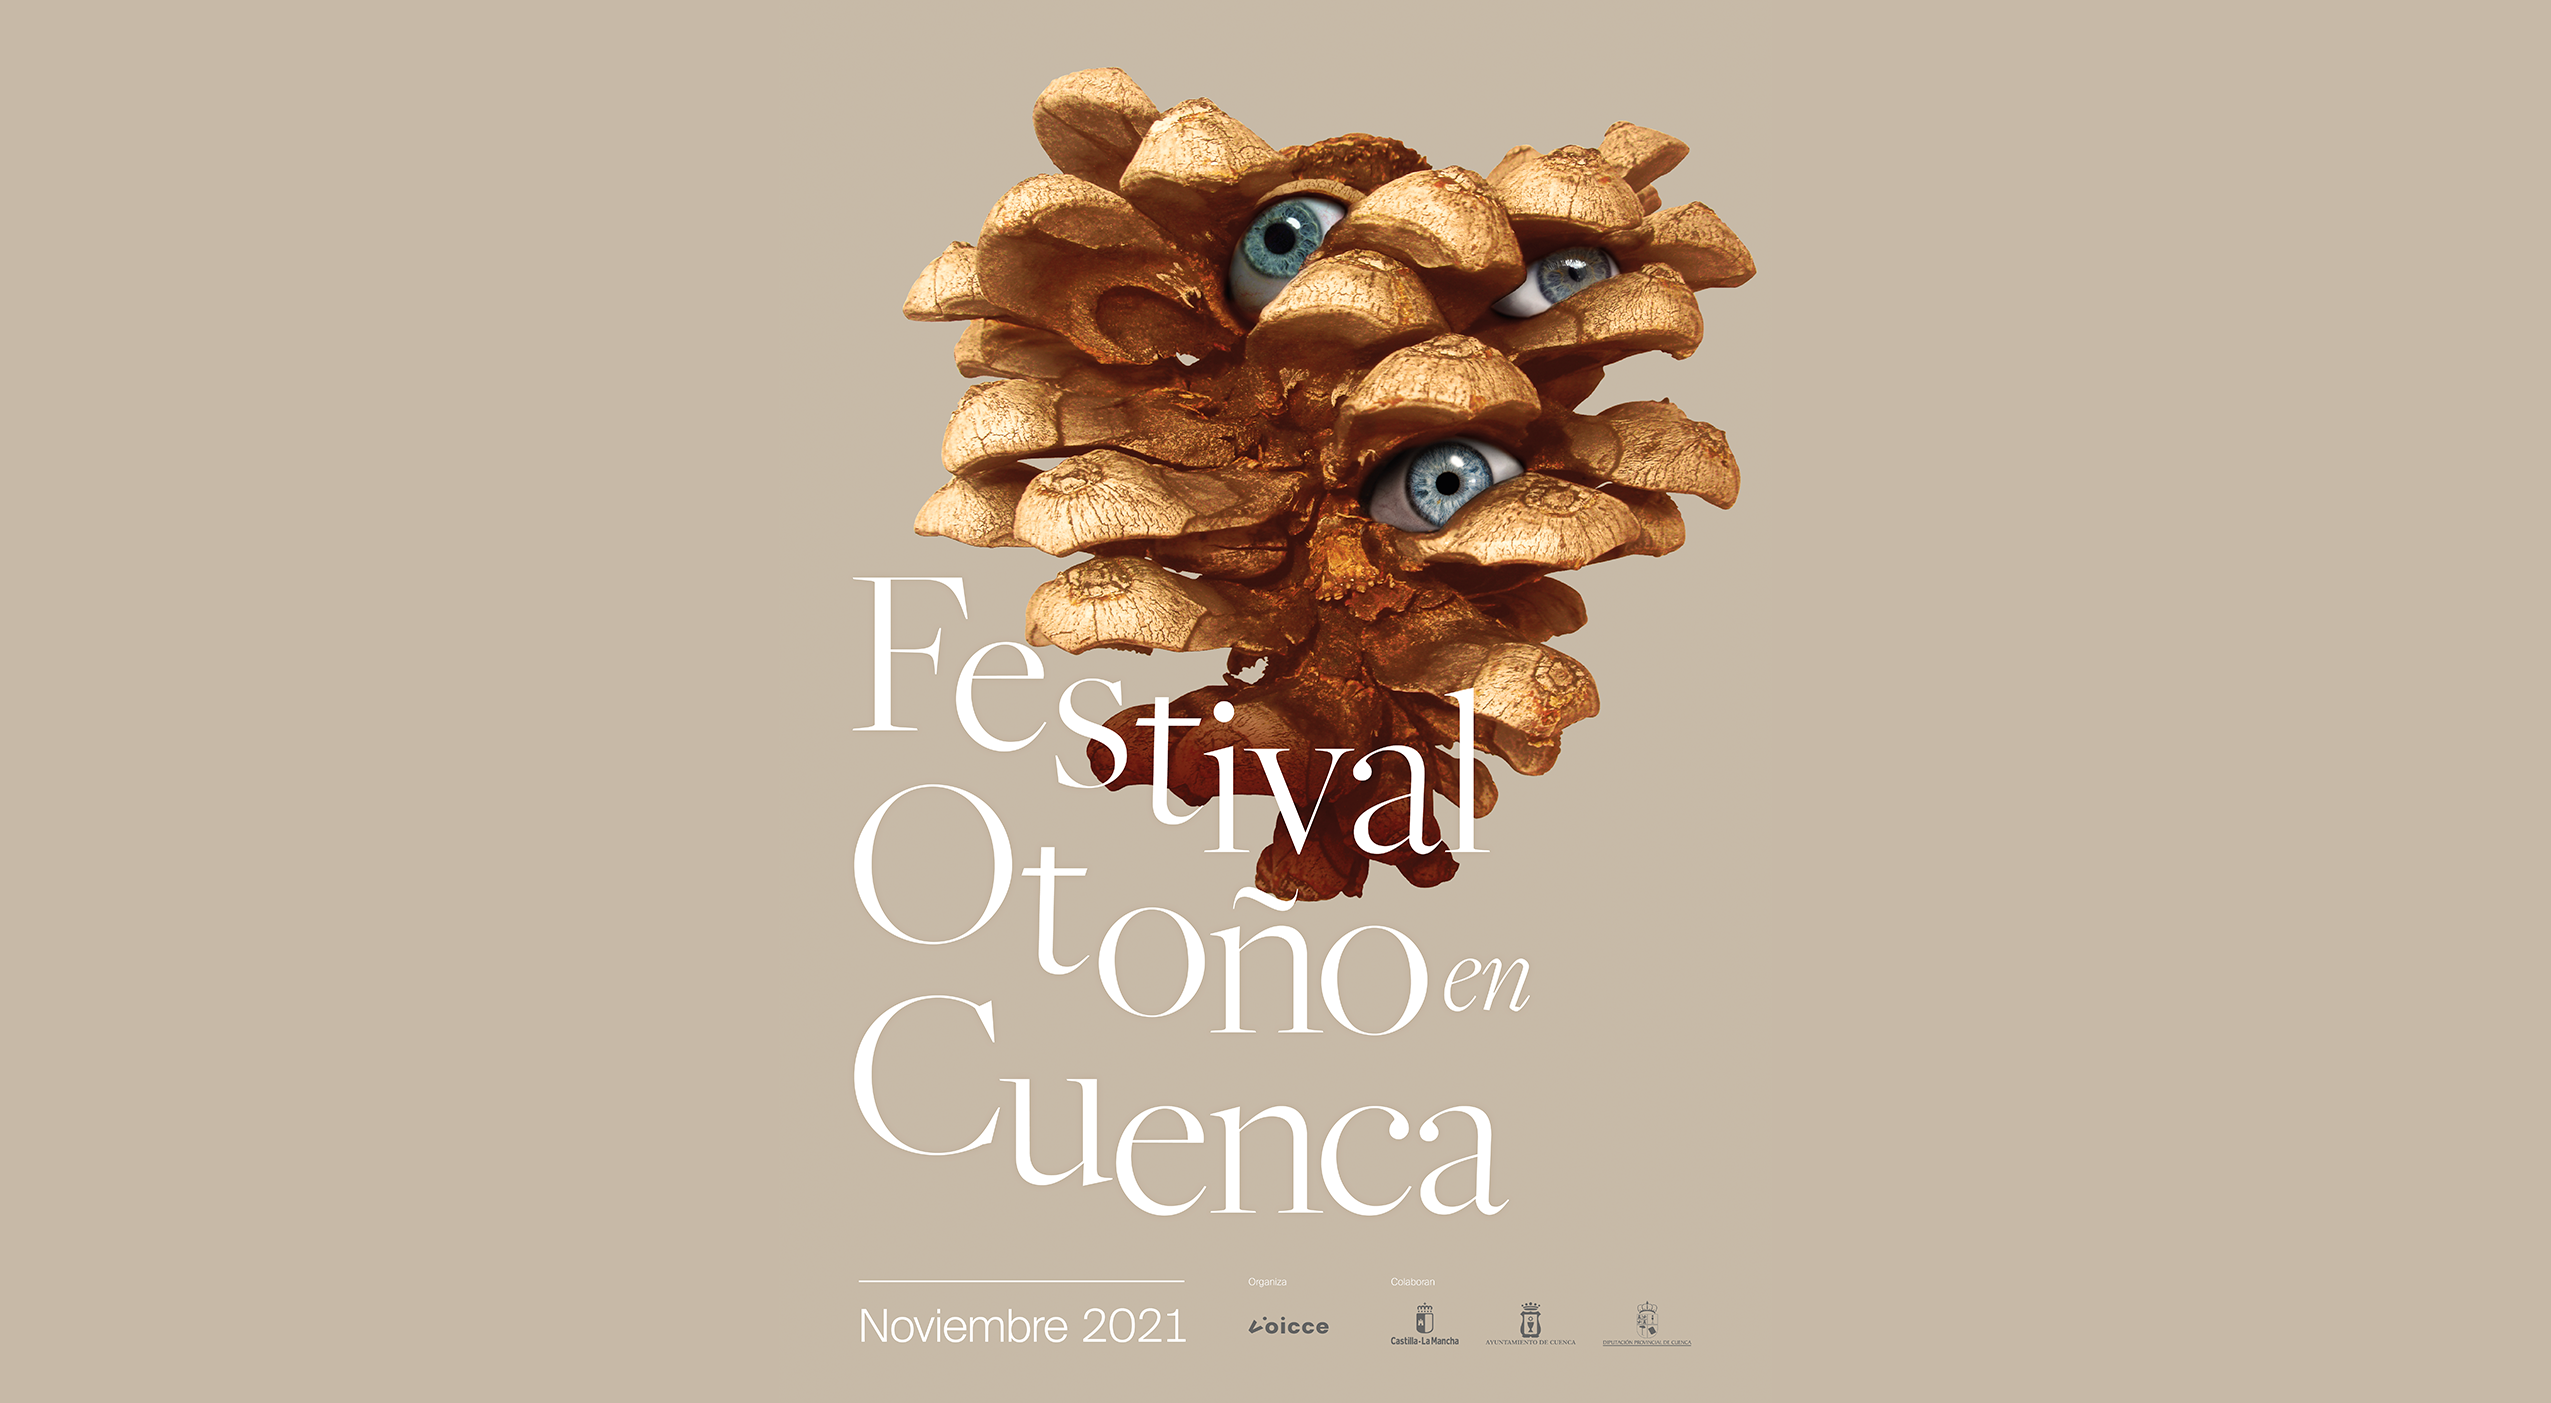 (c) Festivalotonocuenca.com